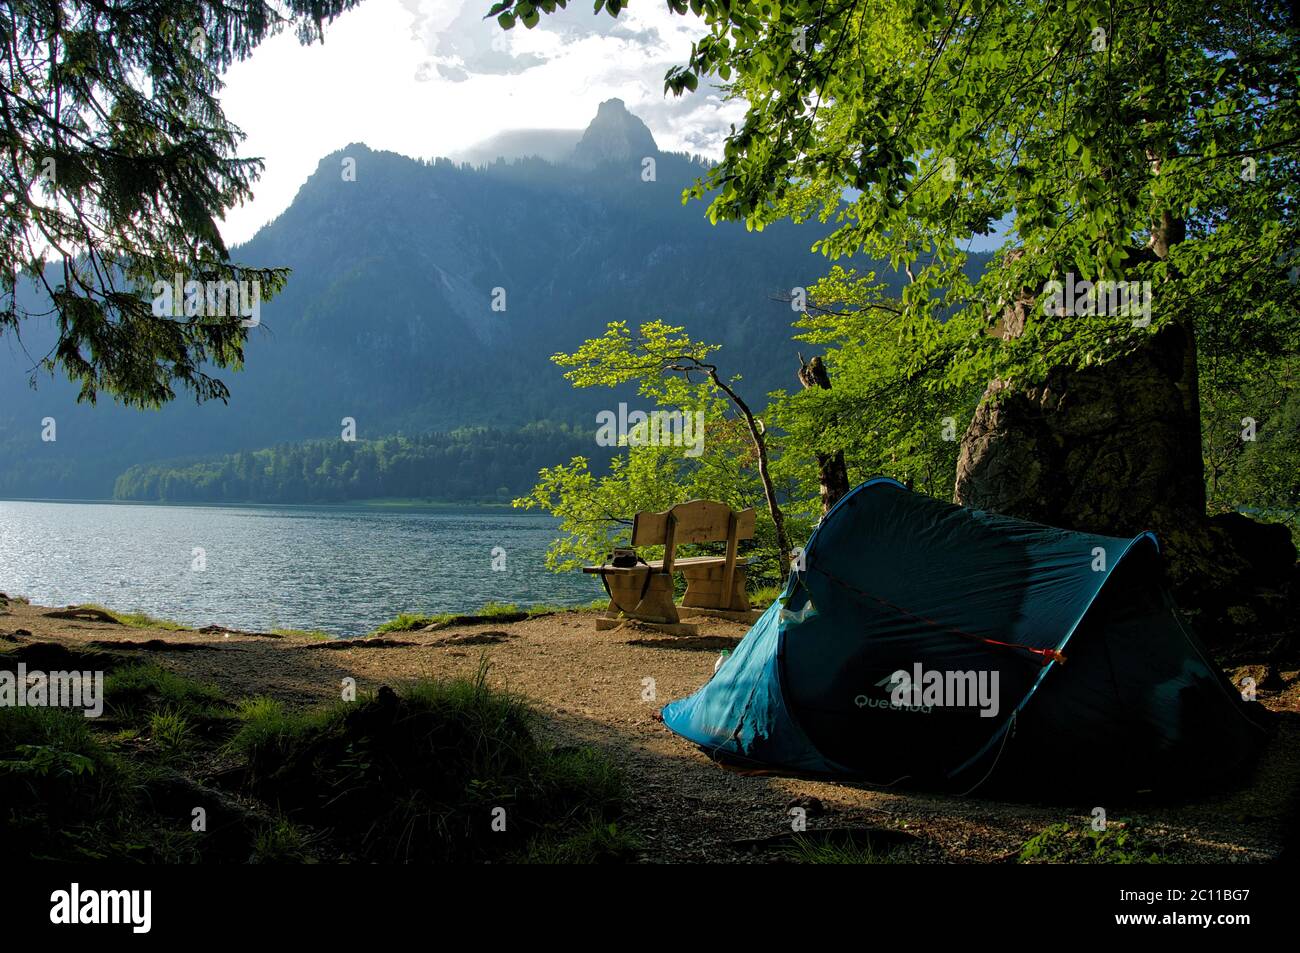 Zelt Wild Camping an einem See in Bayern, Deutschland Stockfotografie -  Alamy